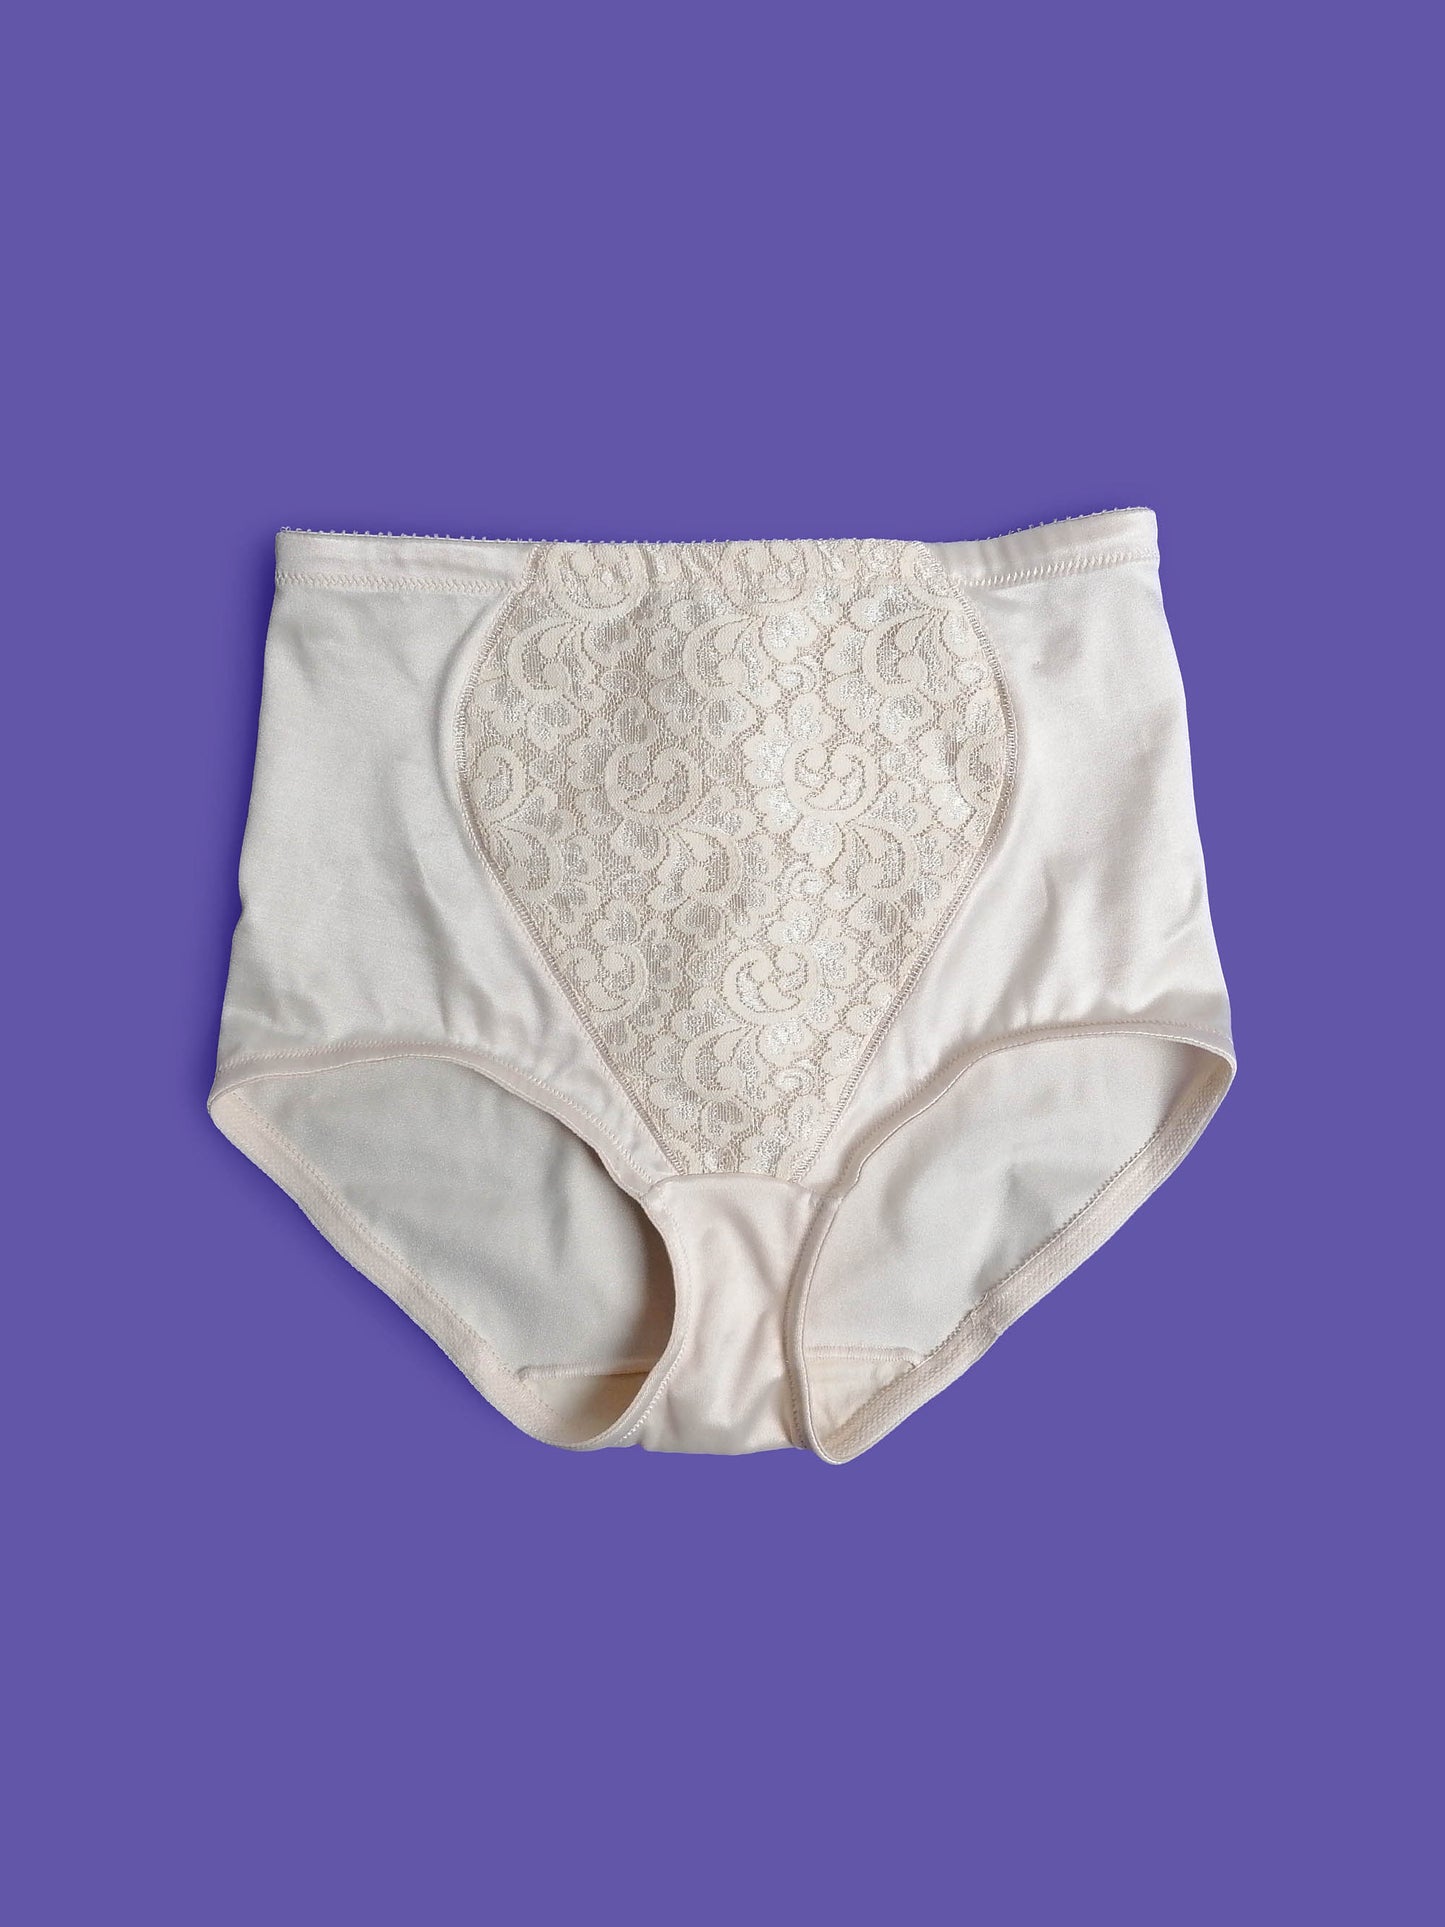 Vintage 90's Playtex 18 Hour High Waist Underwear - size S-M